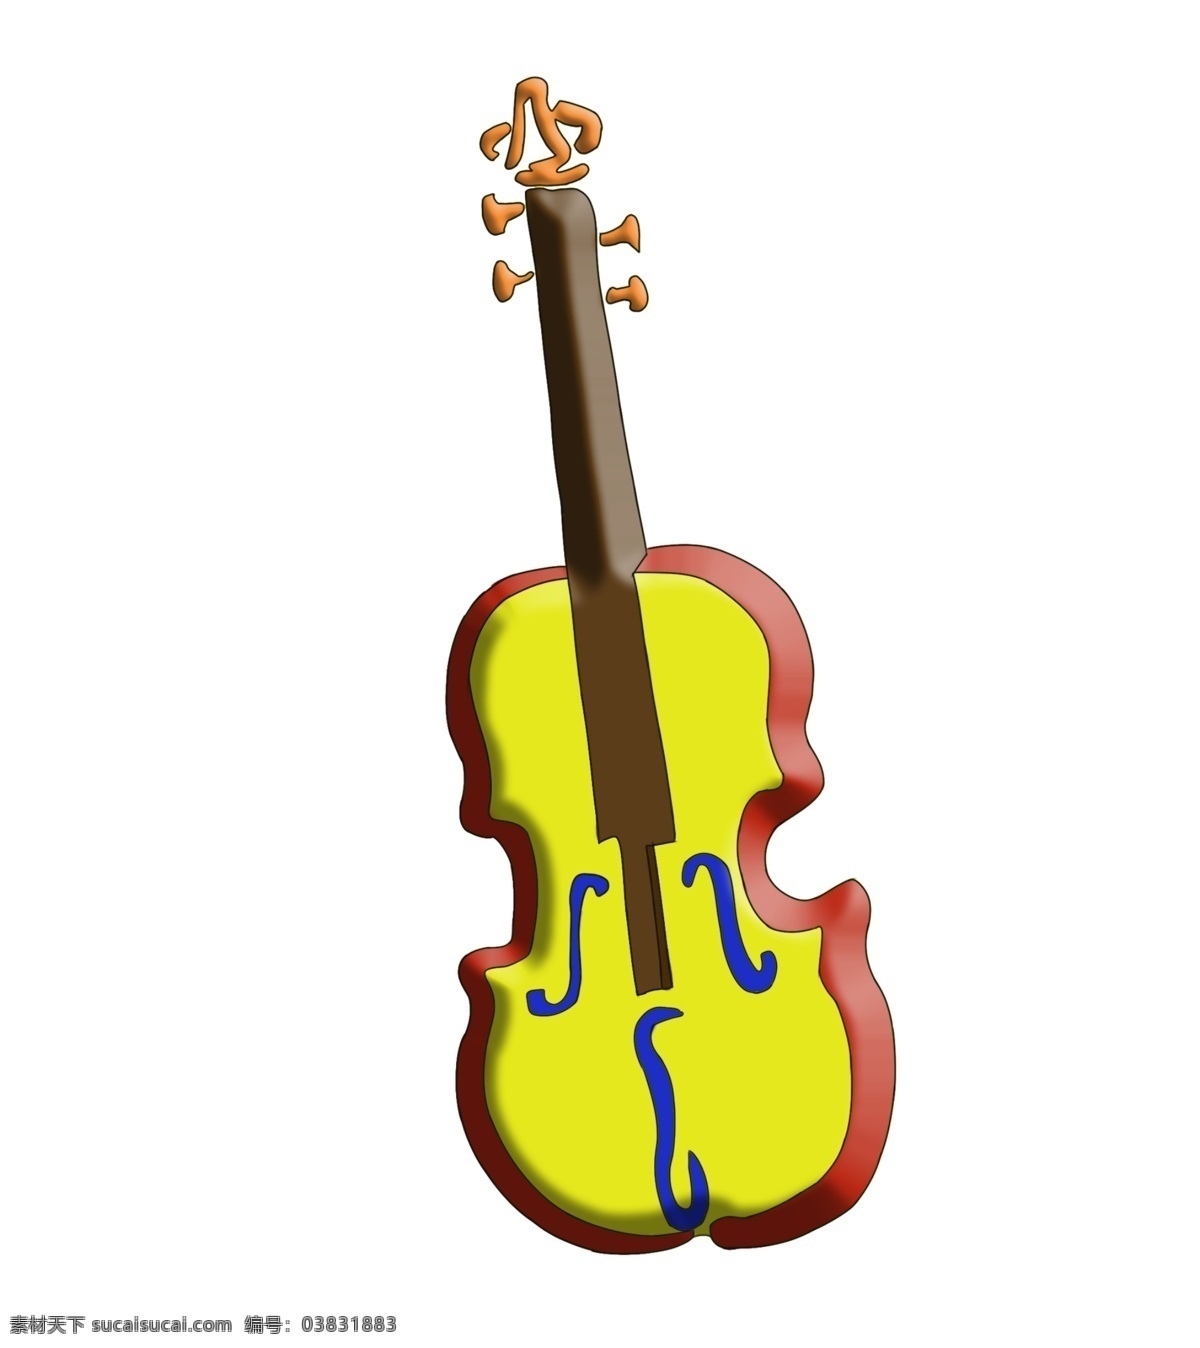 小提琴 乐器 插画 黄色的小提琴 乐器插画 卡通插画 音乐插画 歌曲伴奏 表演 汇演 小提琴插画